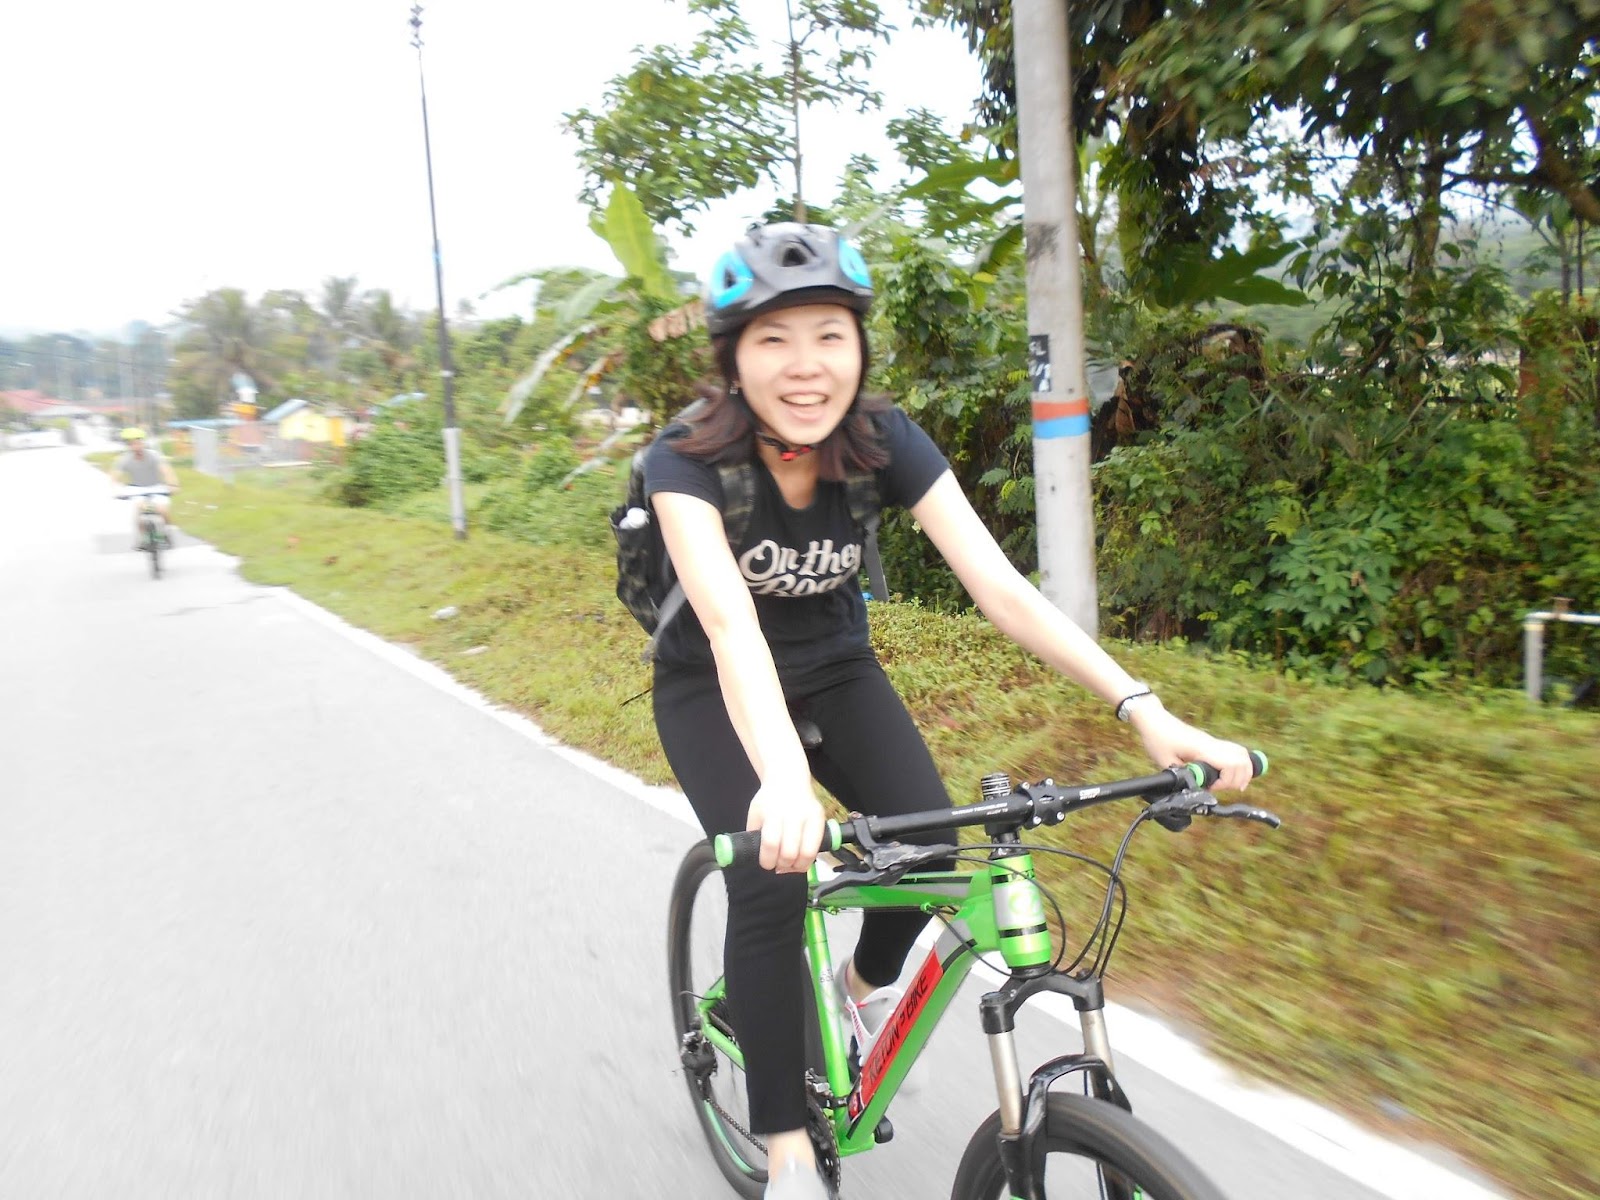 馬來西亞 自行車 腳踏車 行程 旅行 心得 吉隆坡 陳雅梅